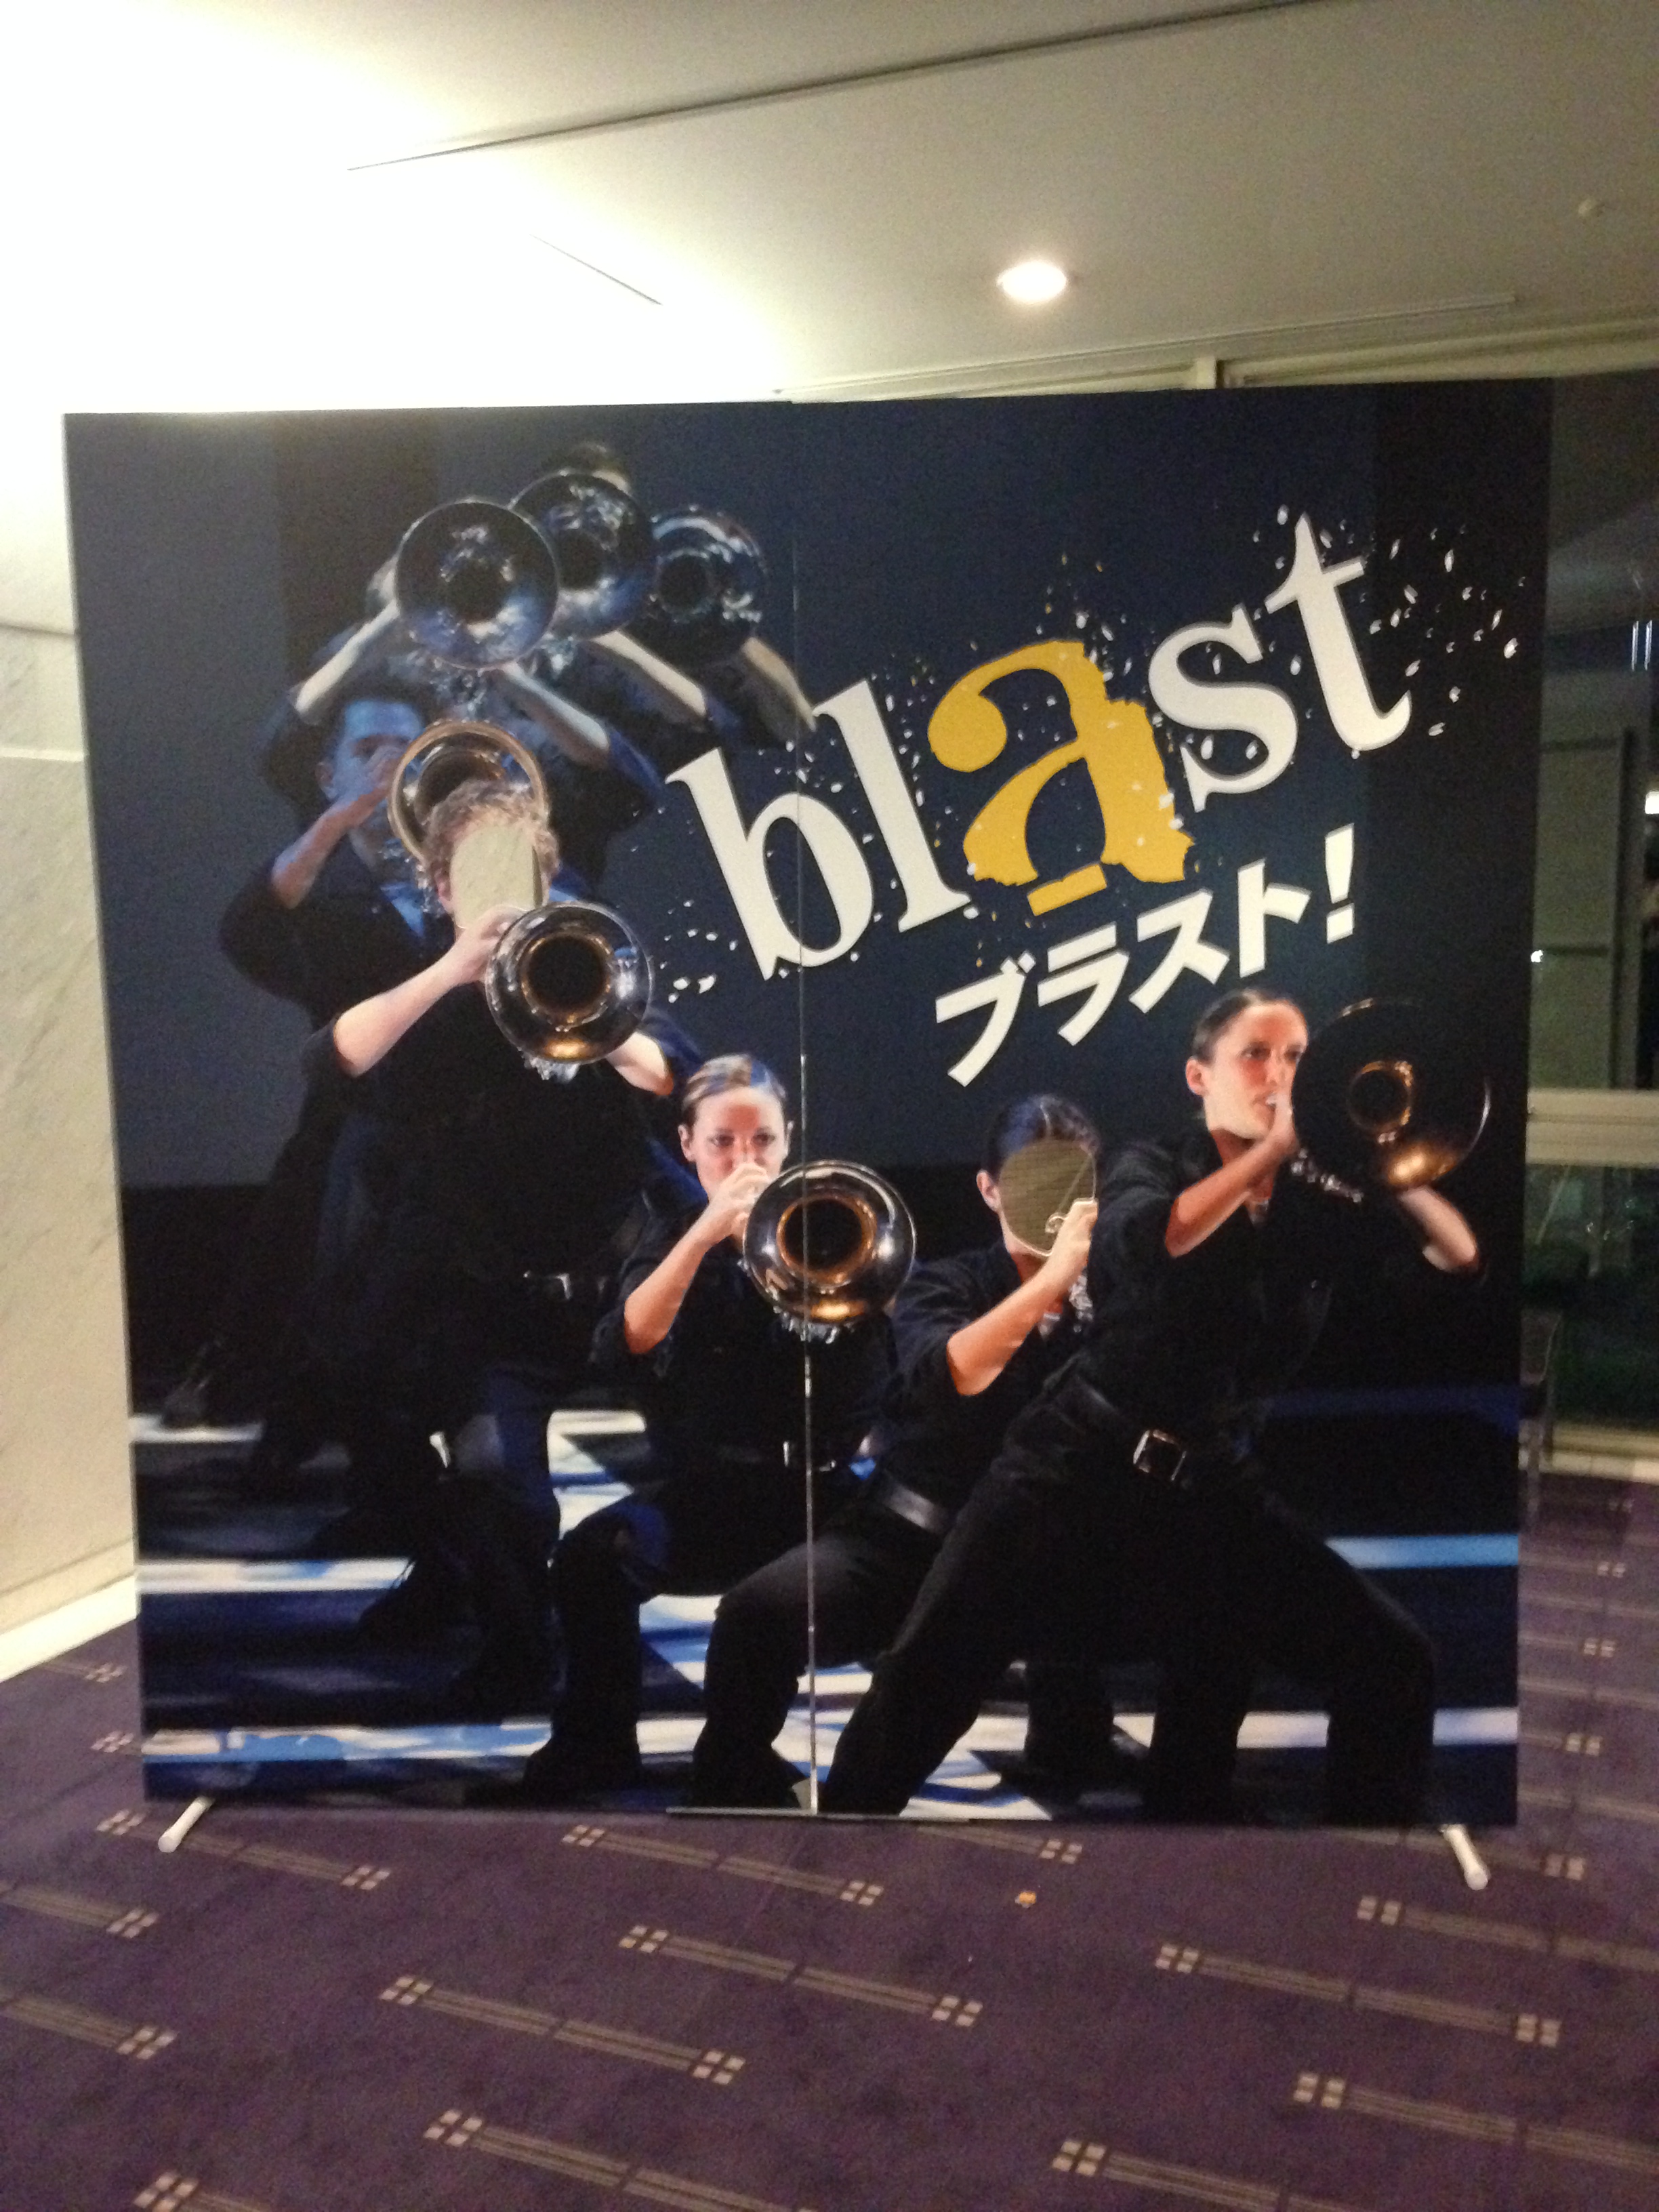 【2019年全国ツアー決定】Blast！ブラスト！ミュージックオブディズニー 最強のブラスバンド集団@全国